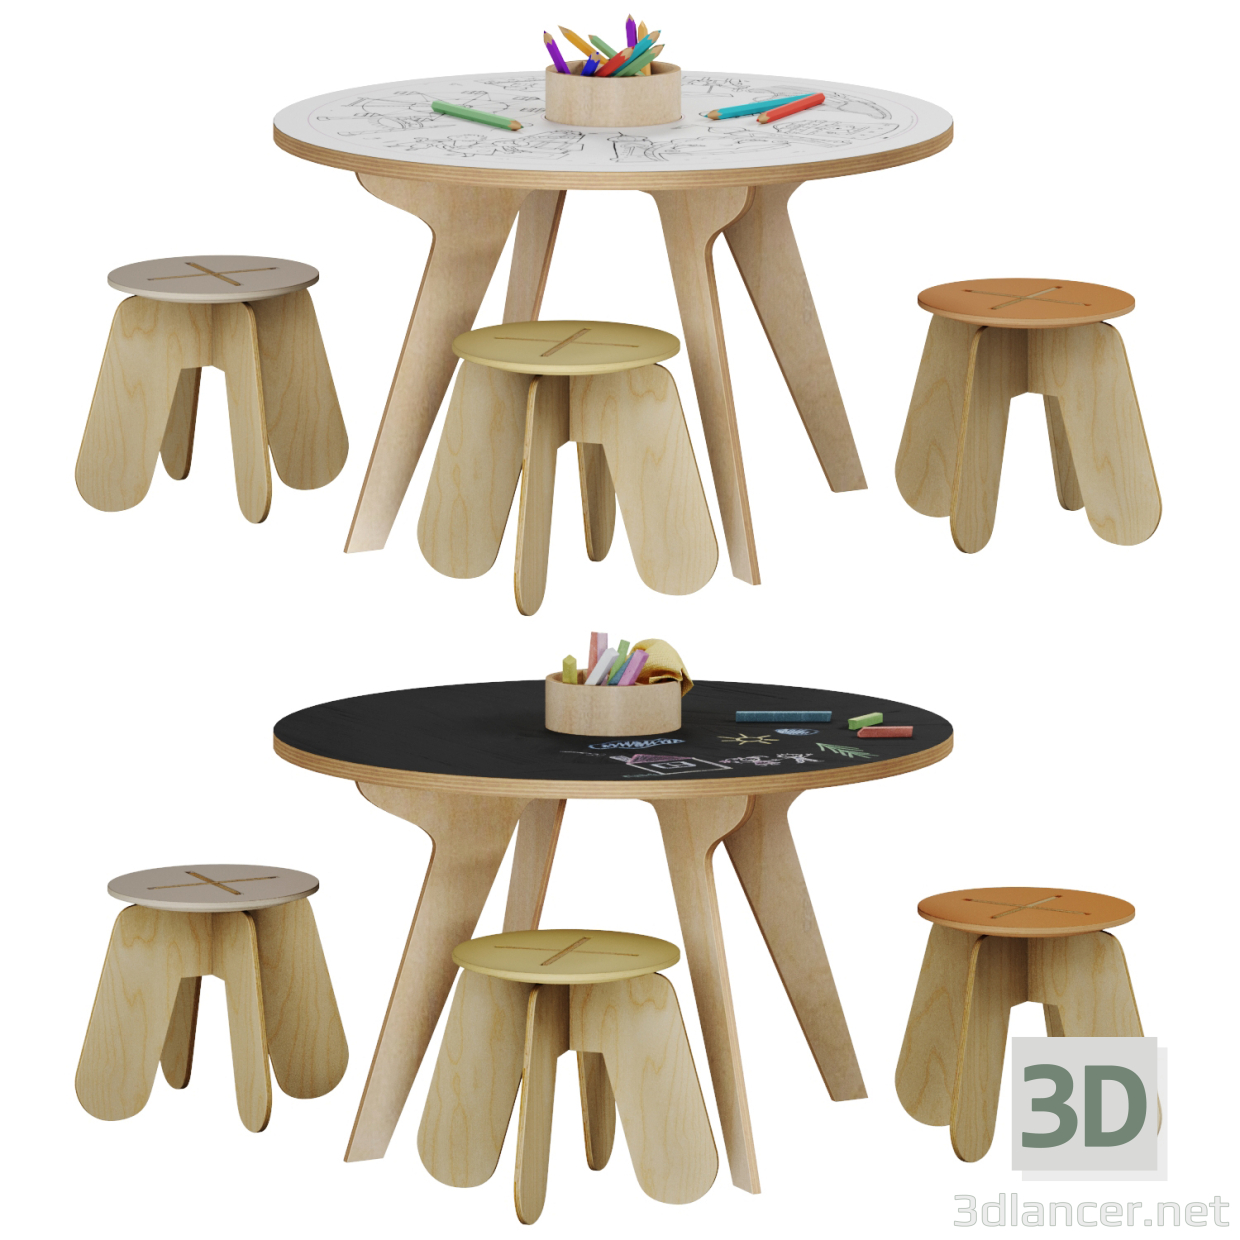 3d Drawing table model buy - render